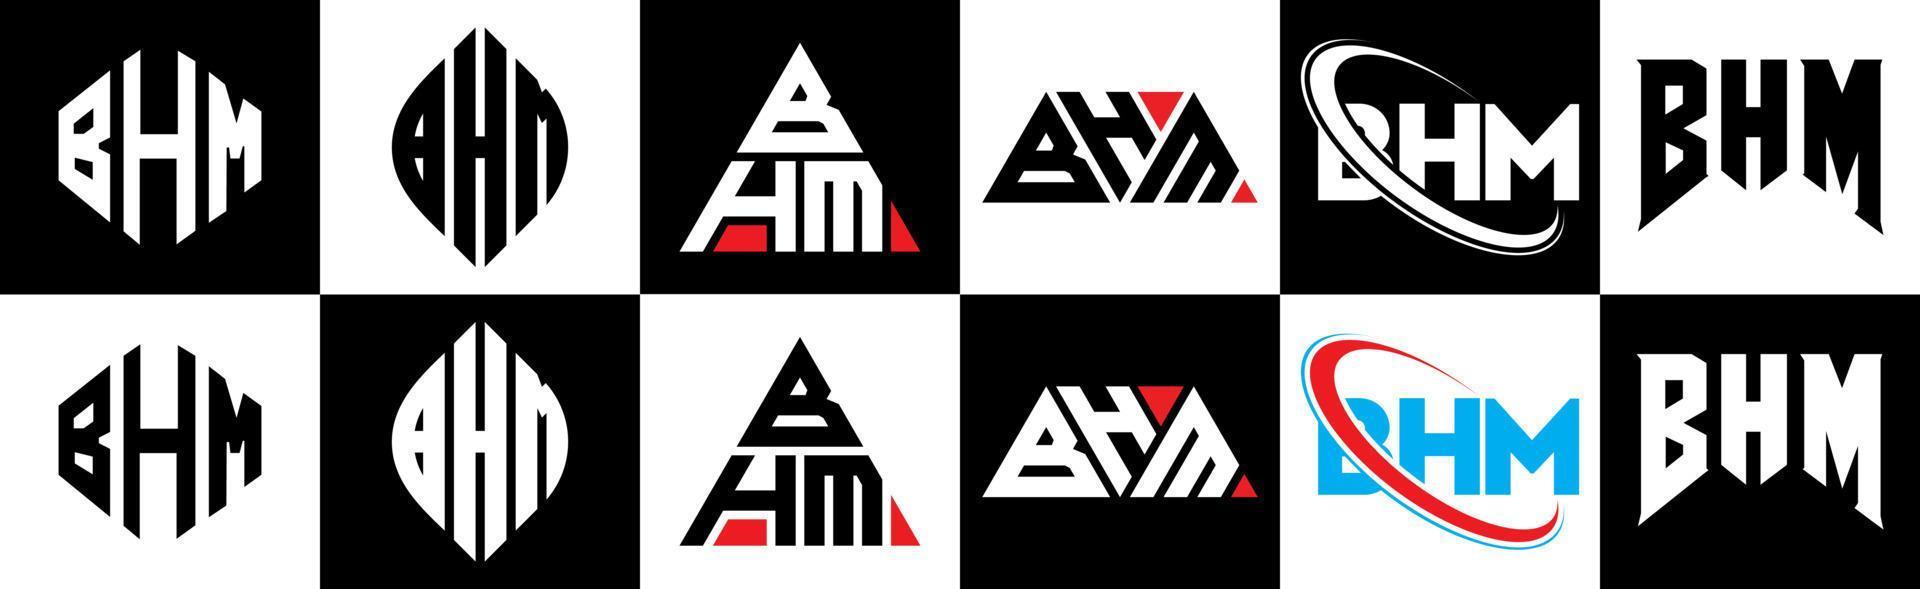 création de logo de lettre bhm en six styles. bhm polygone, cercle, triangle, hexagone, style plat et simple avec logo de lettre de variation de couleur noir et blanc dans un plan de travail. logo bhm minimaliste et classique vecteur